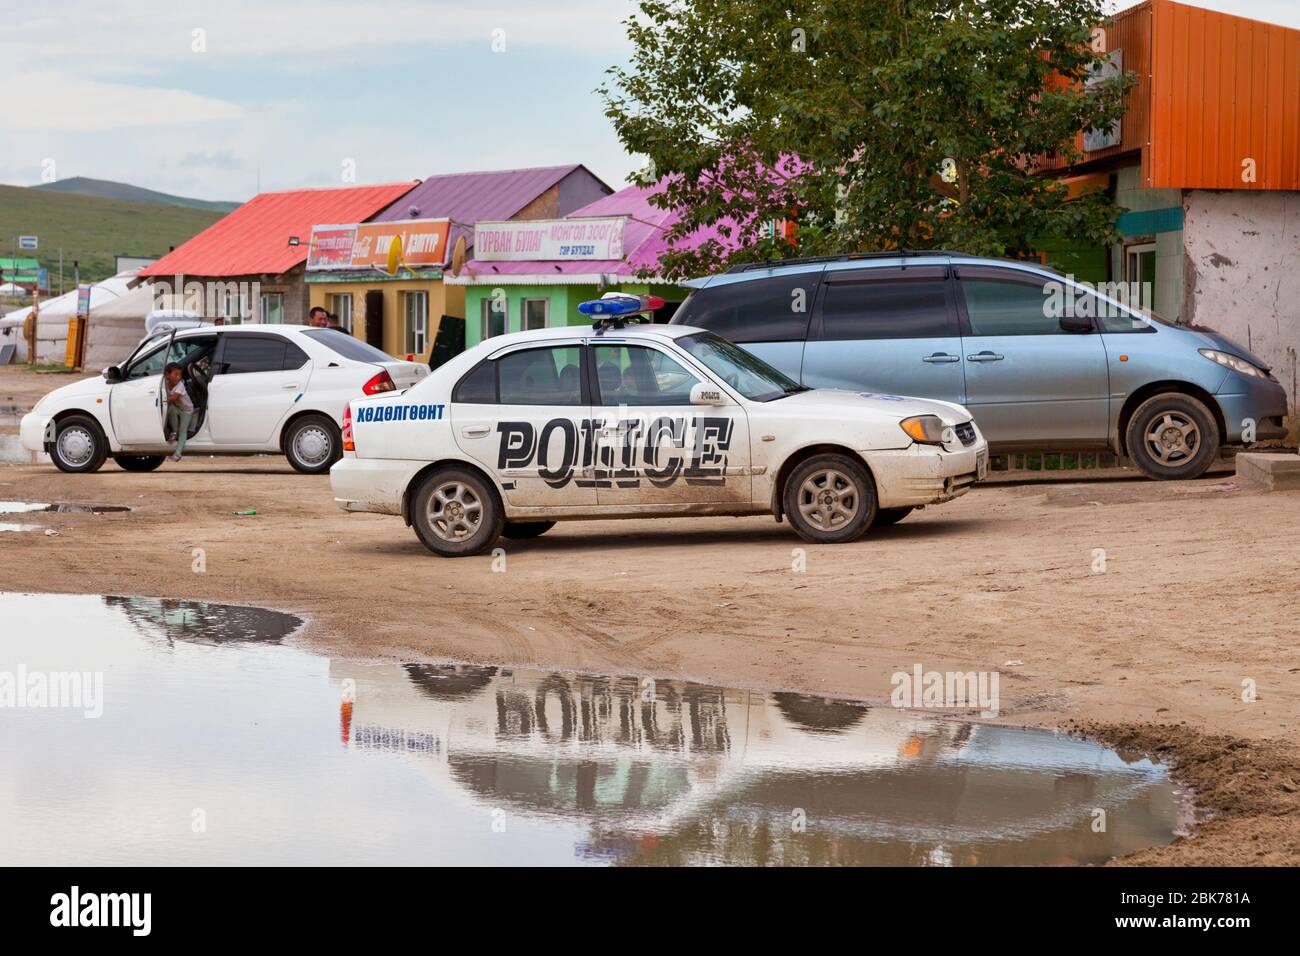 Elsen Tasarkhai, Mongolia - August 04 2018: Police car parked outside a restaurant near the dune of 'Mini Gobi'. Stock Photo